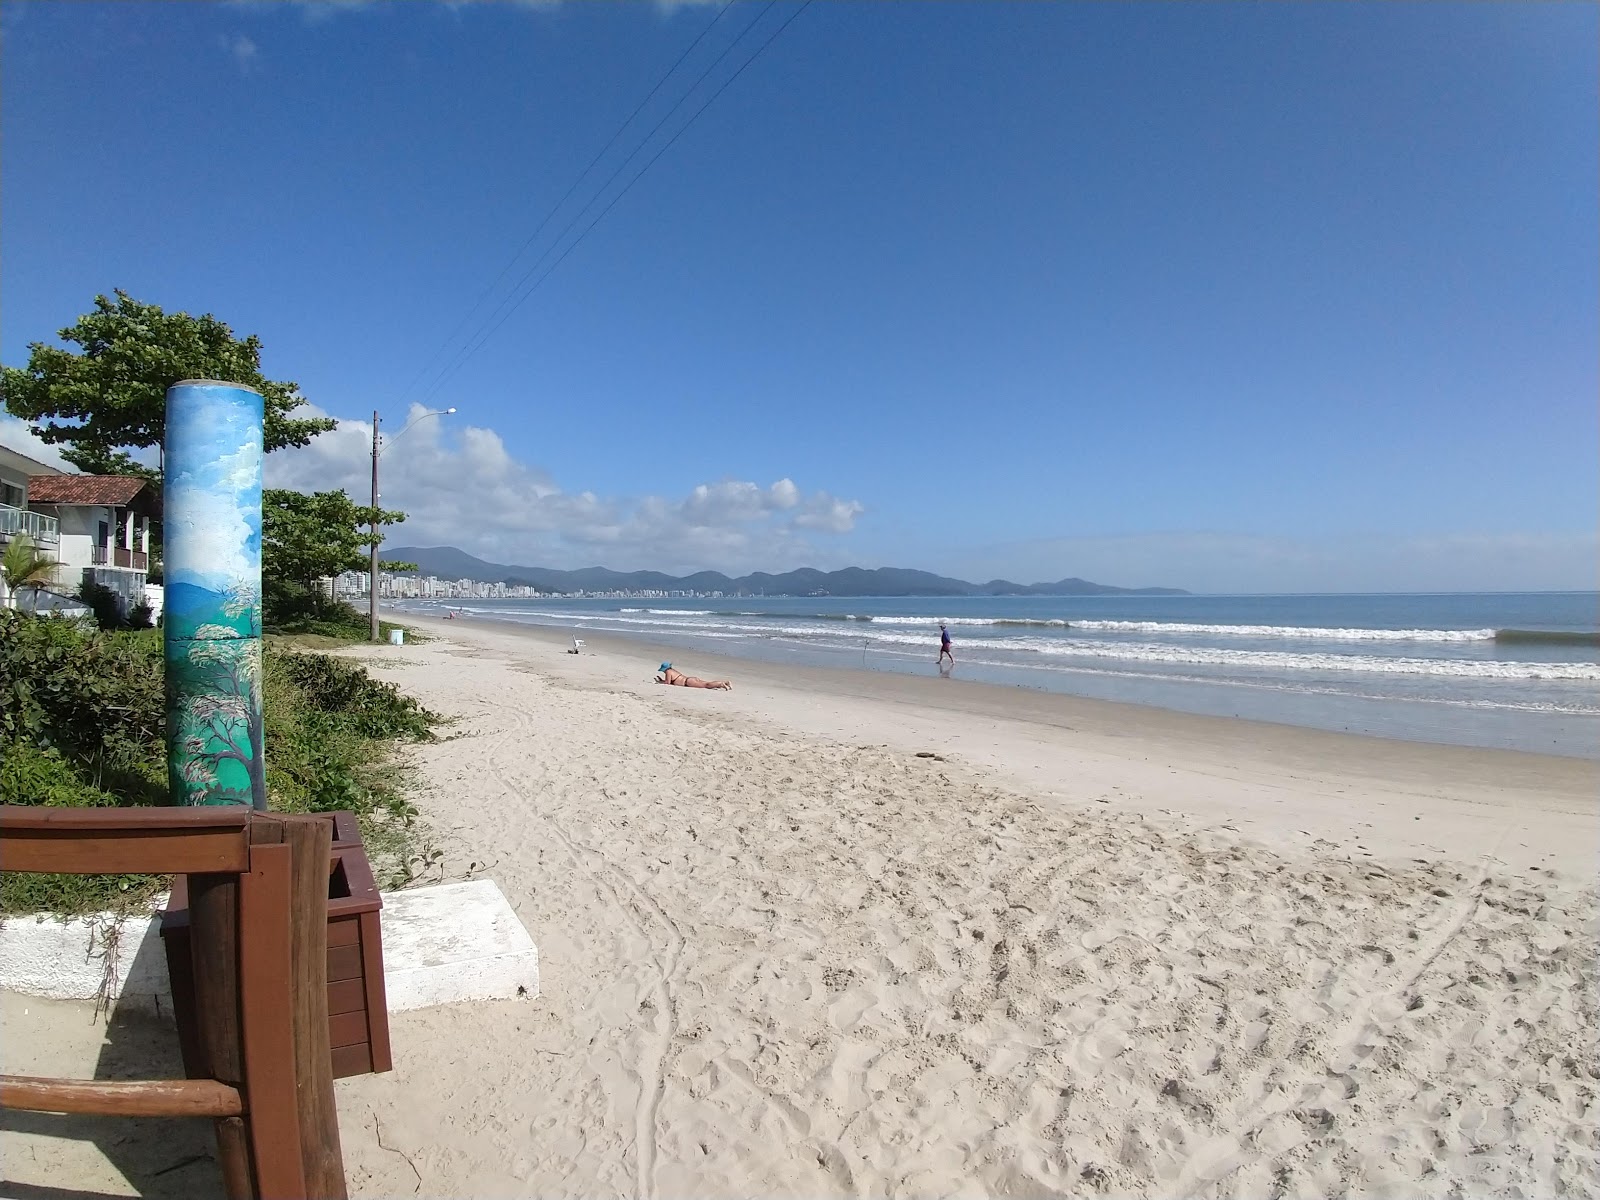 Praia do Pereque'in fotoğrafı düz ve uzun ile birlikte